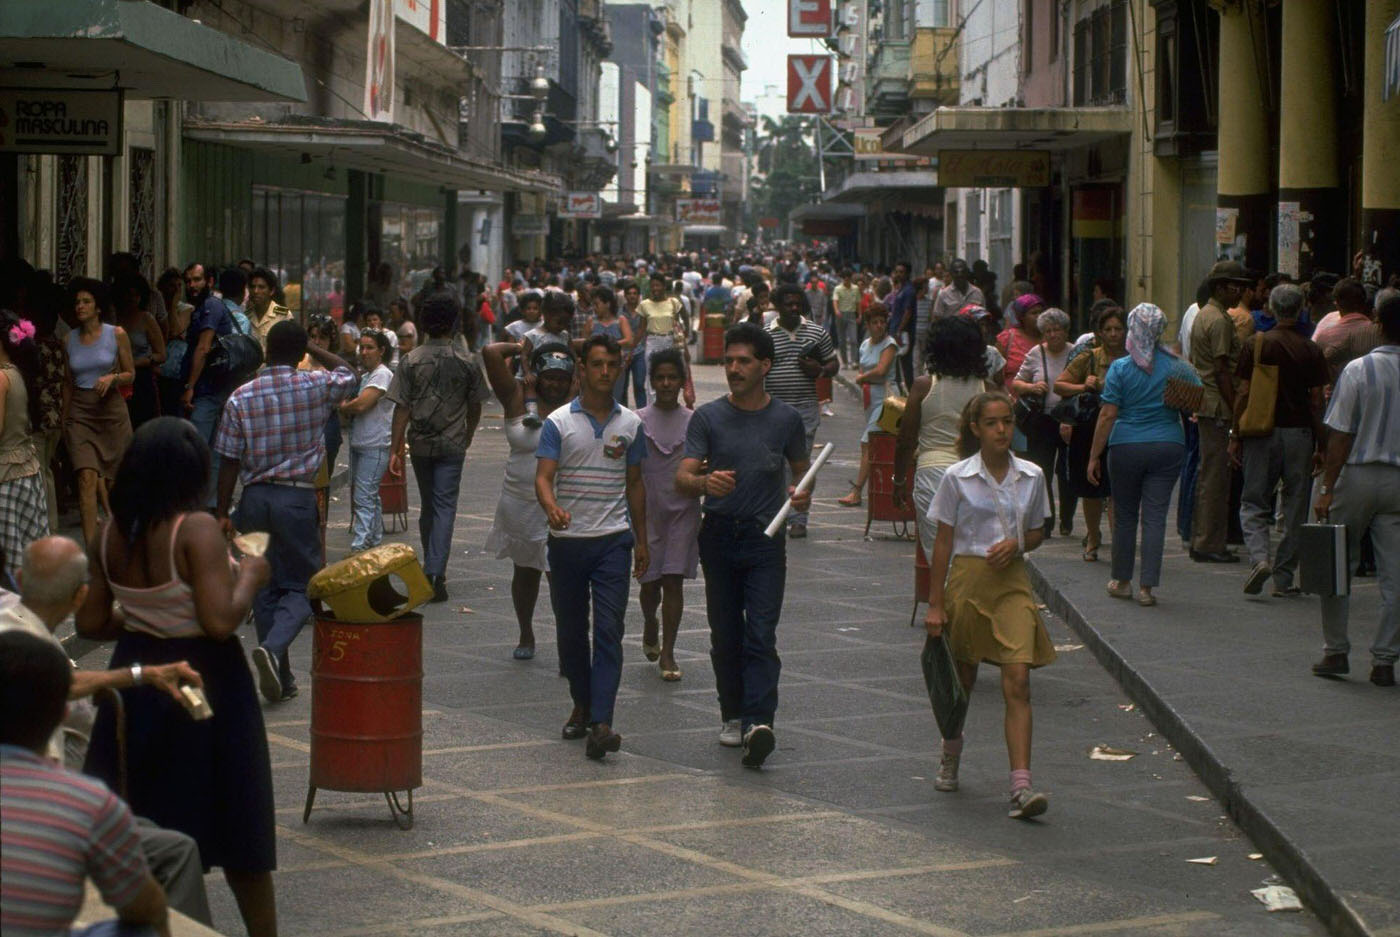 Pedestrian-crowded street in Havana, Cuba.